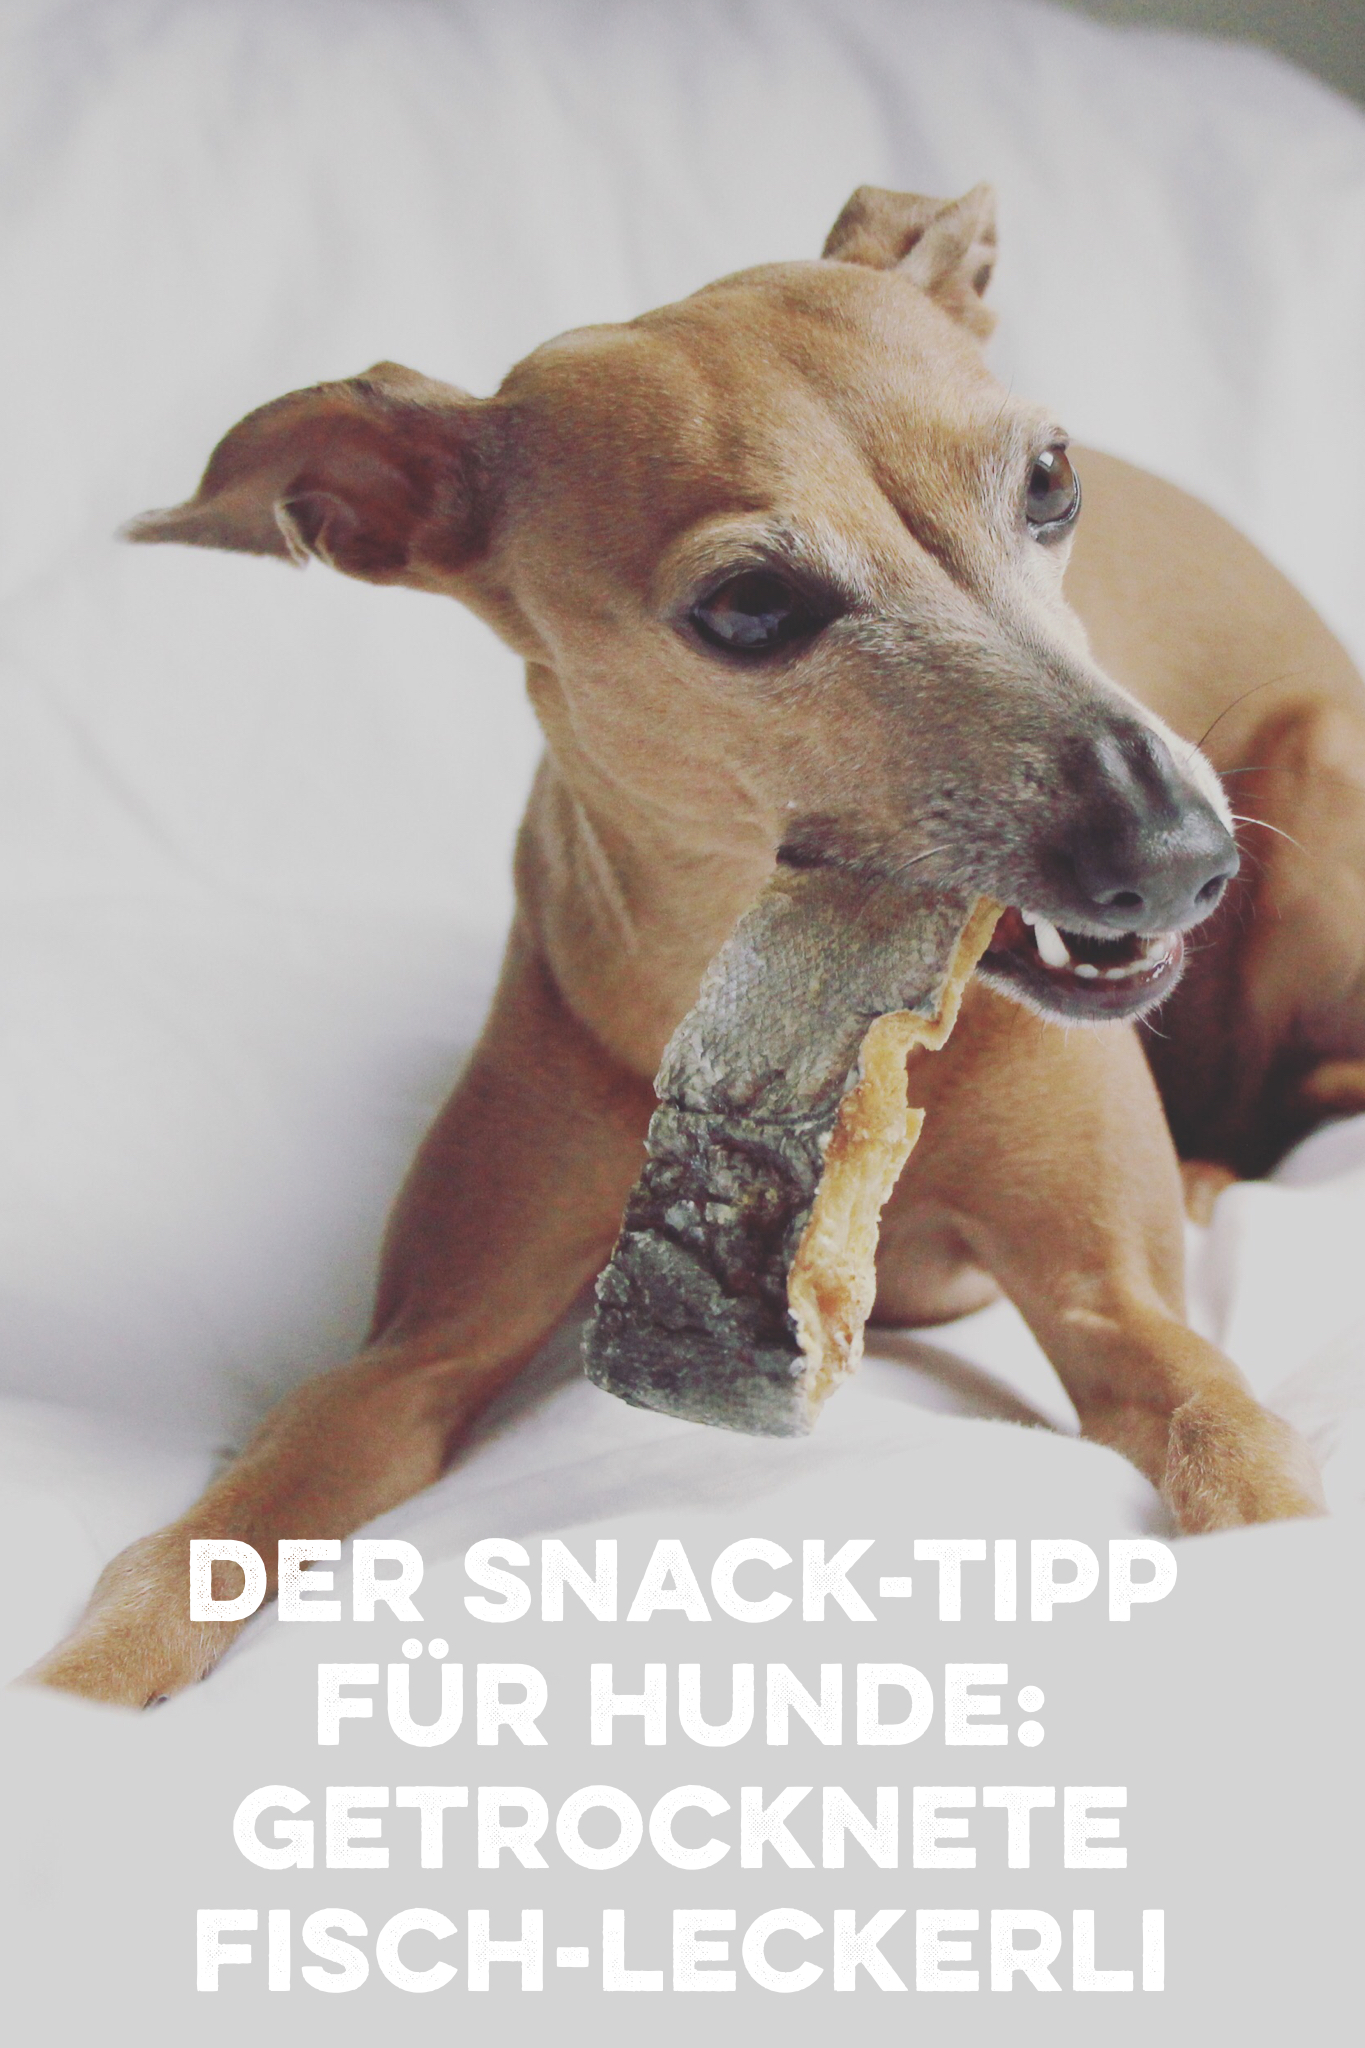 Der gesunde Snack-Tipp für Hunde